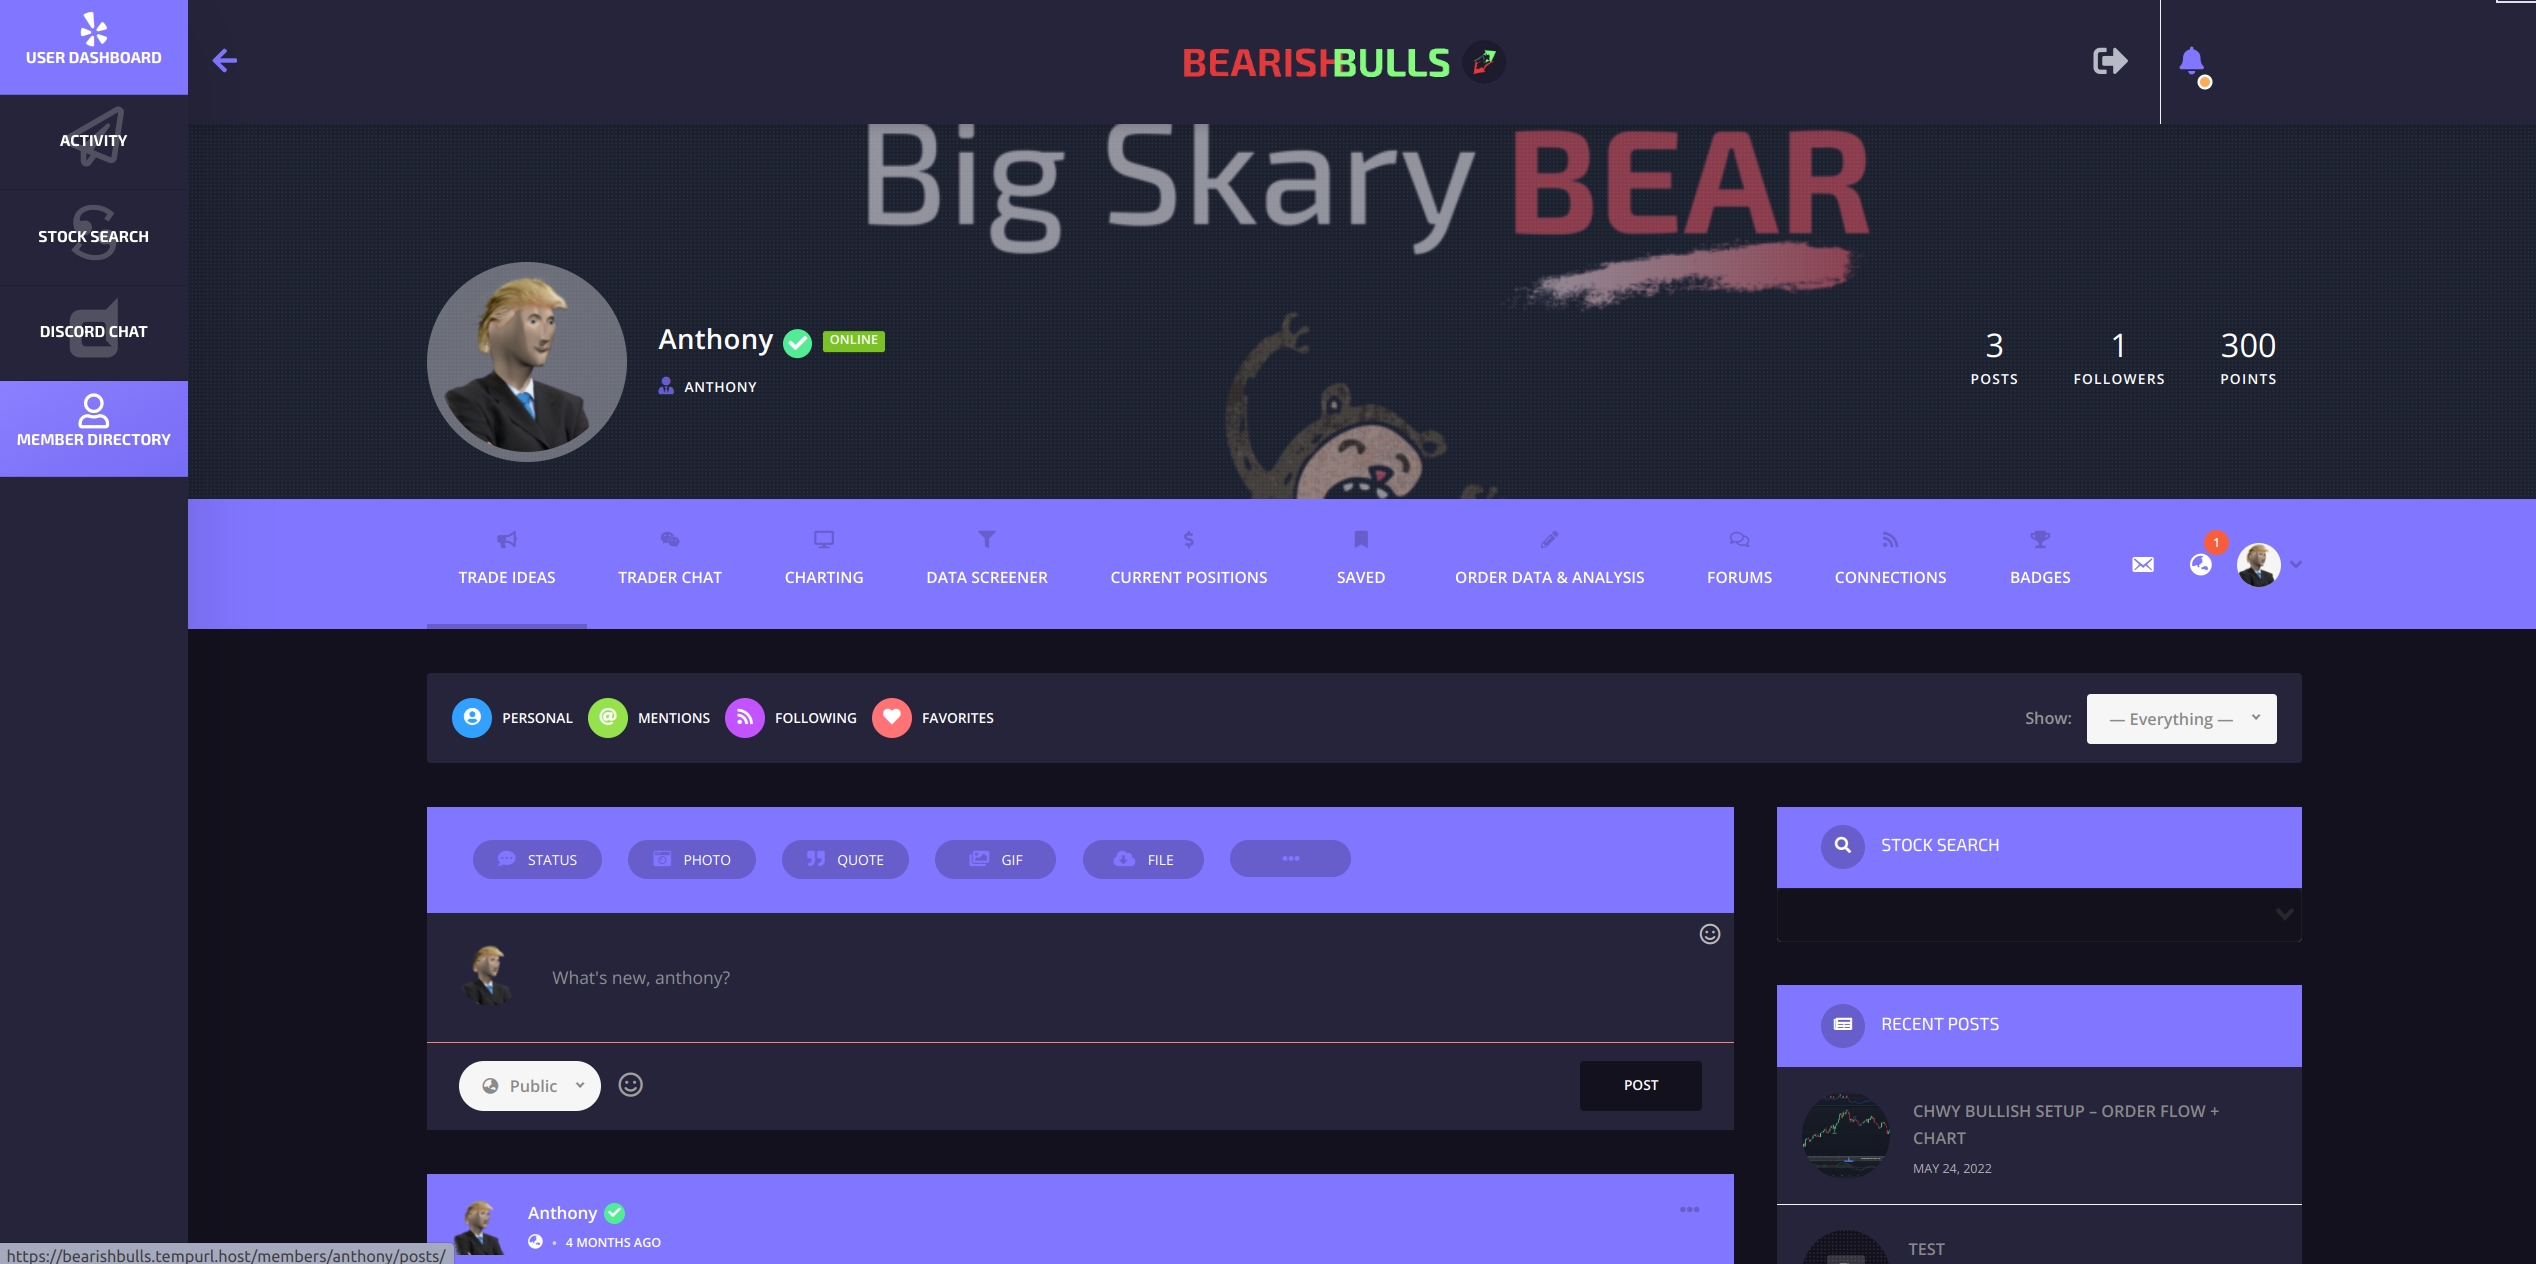 Bearish bulls trader dashboard